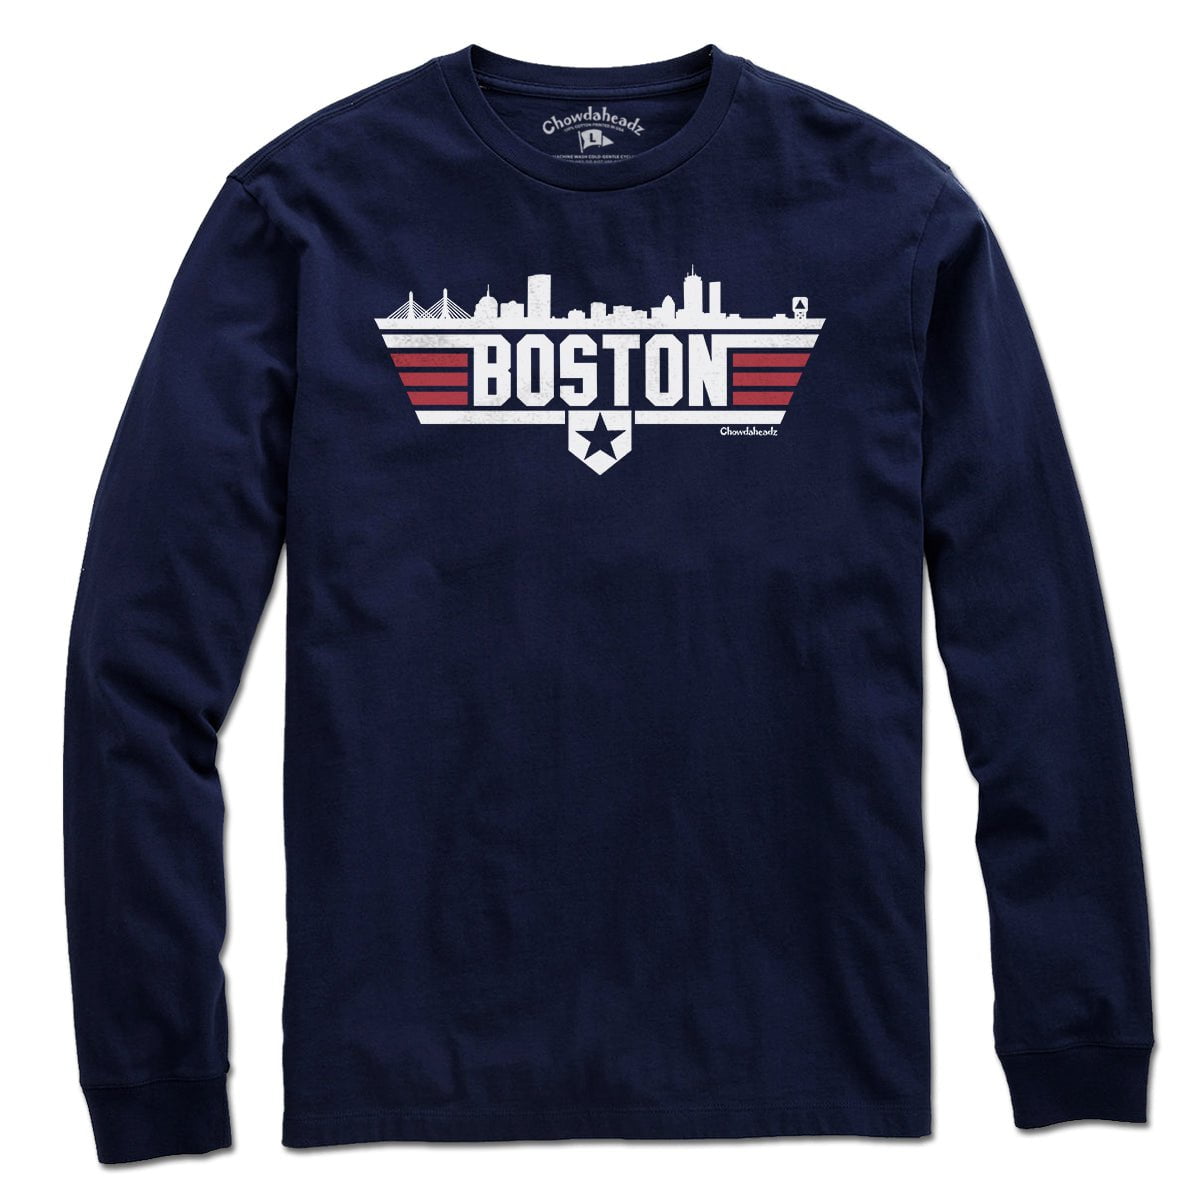 Boston Top Town Homeplate T-Shirt - Chowdaheadz